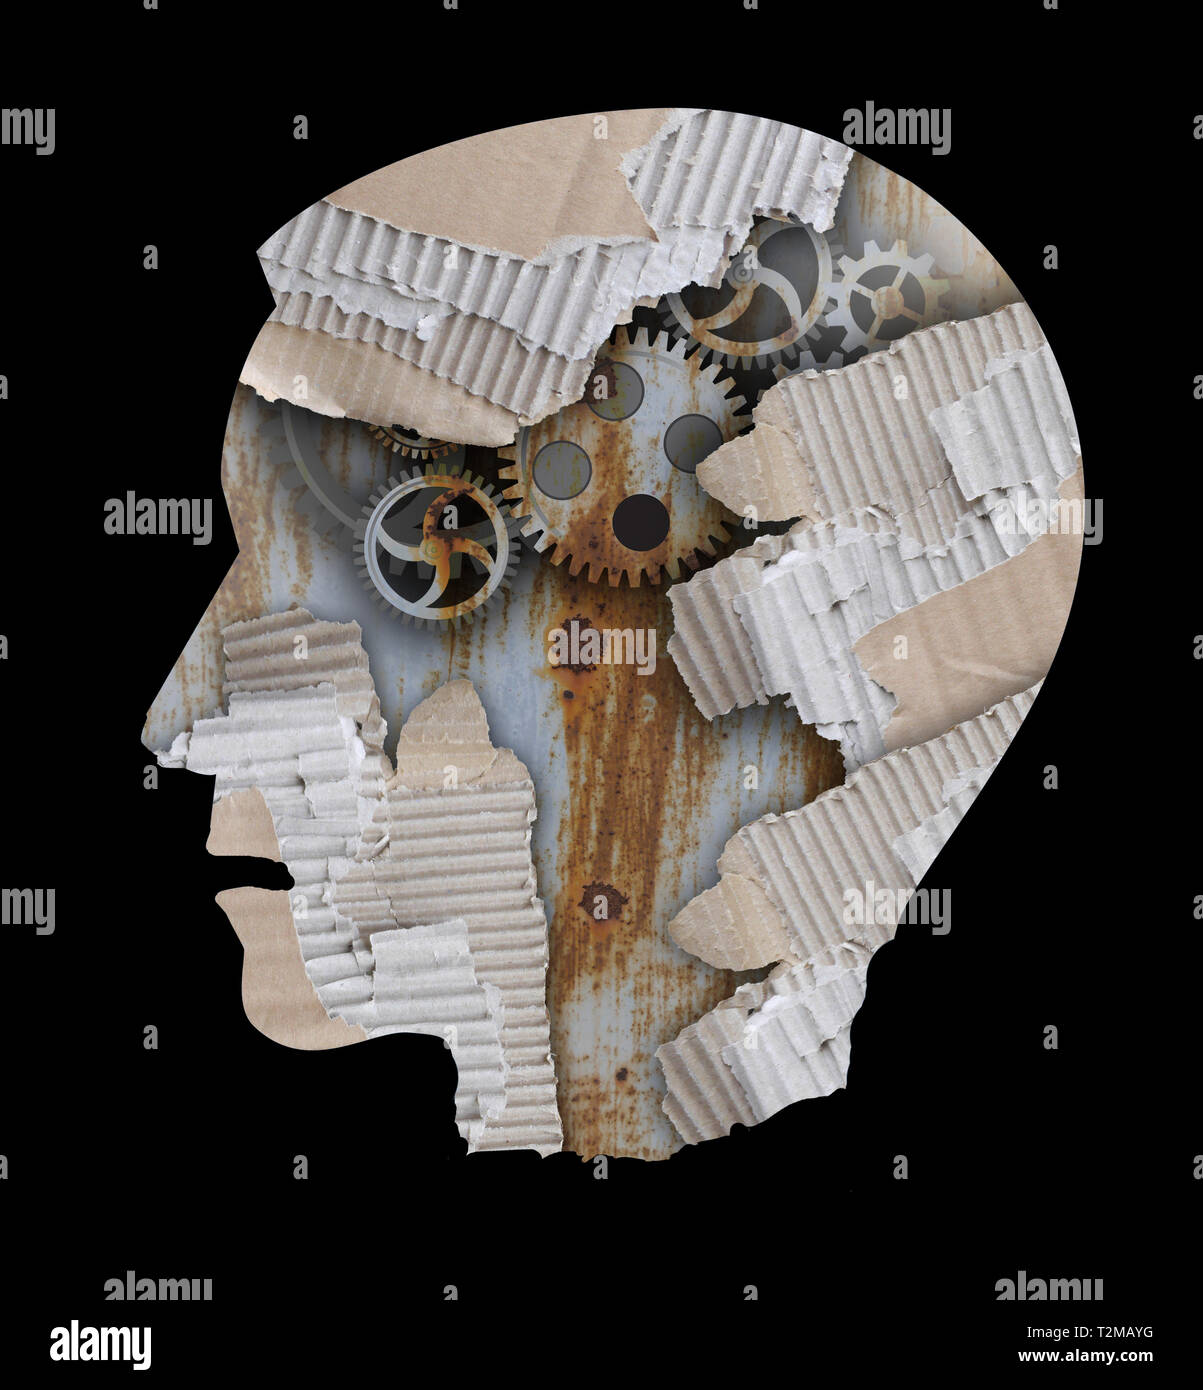 Depressionen, Stress, Burnout Syndrom Konzept. Stilisierten männlichen Kopf Silhouette. Foto-Montage mit gerippten Karton und Gang. Stockfoto